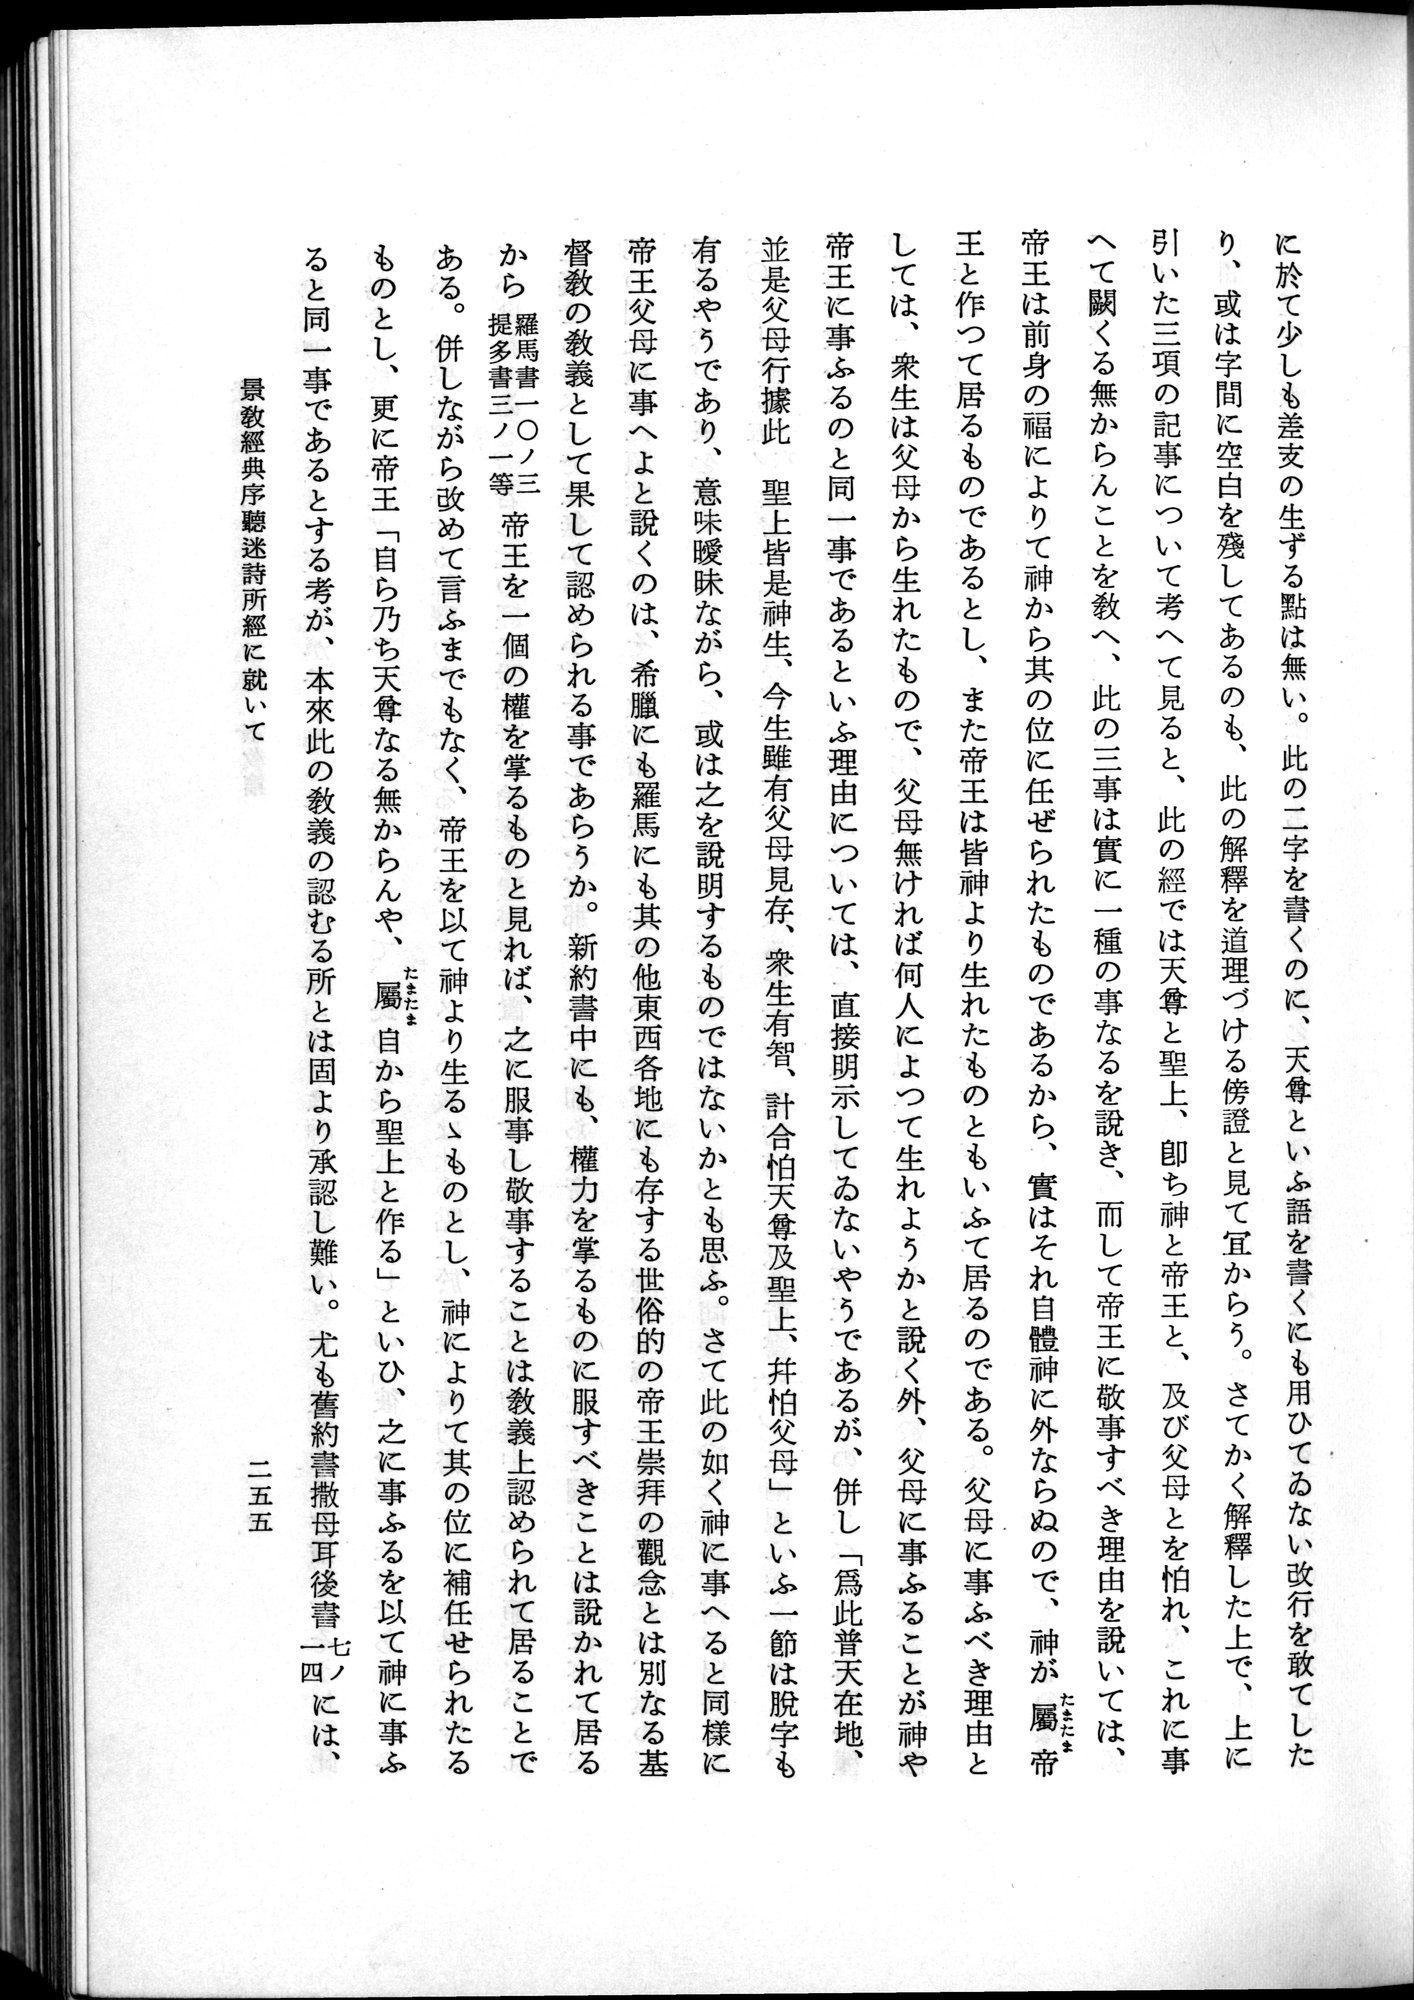 羽田博士史学論文集 : vol.2 / Page 317 (Grayscale High Resolution Image)